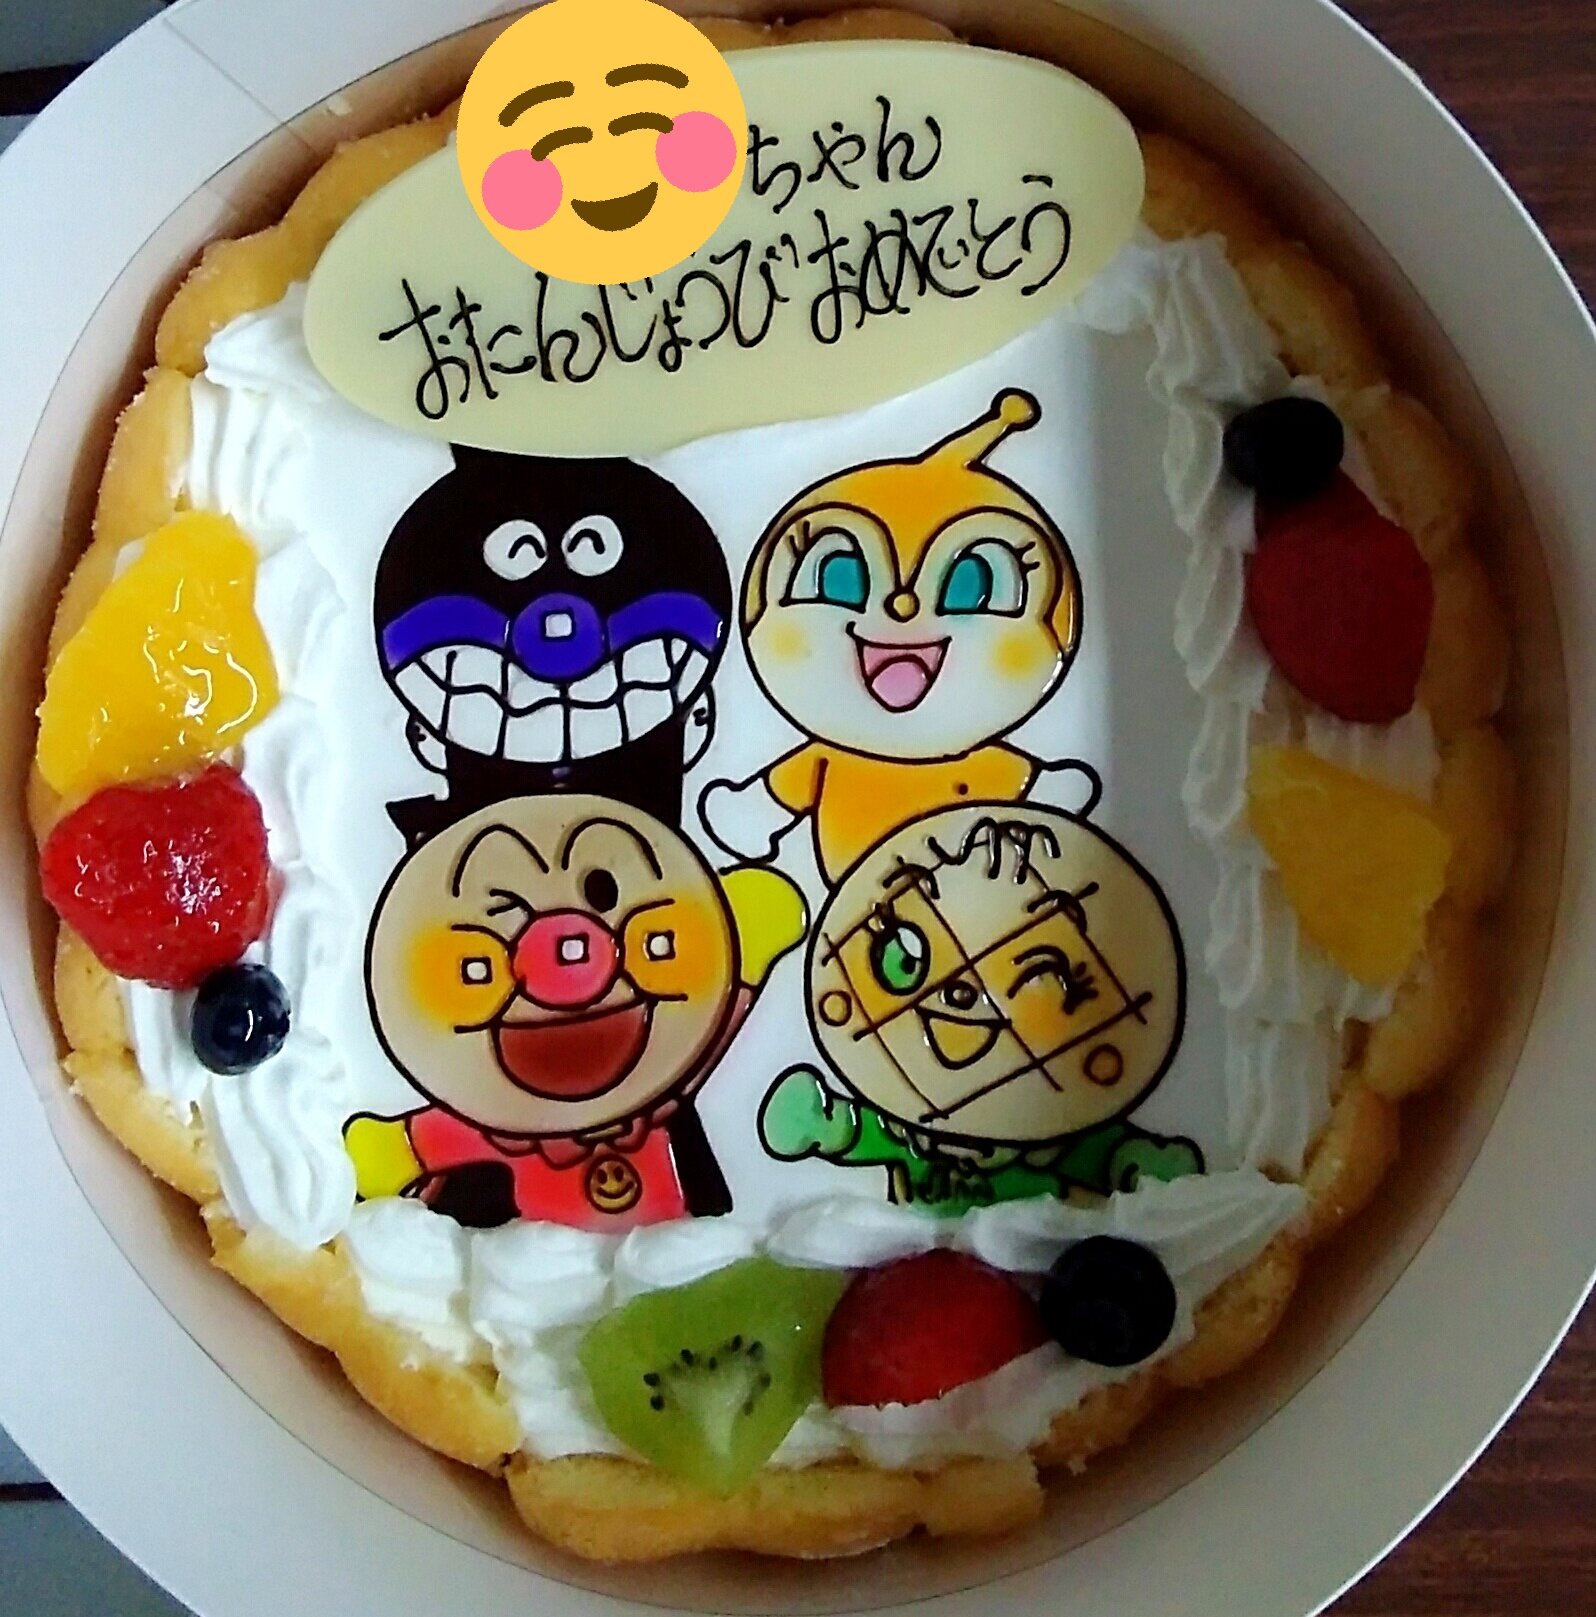 パン工房リアン町田小山店 Twitterissa お誕生日おめでとうございます とても可愛いケーキですね これはキャラクターのまわりを縁取ったイラストケーキです 今年の誕生日はリアンのイラストケーキをご利用してみてはいかがでしょうか ご注文お待ちしており